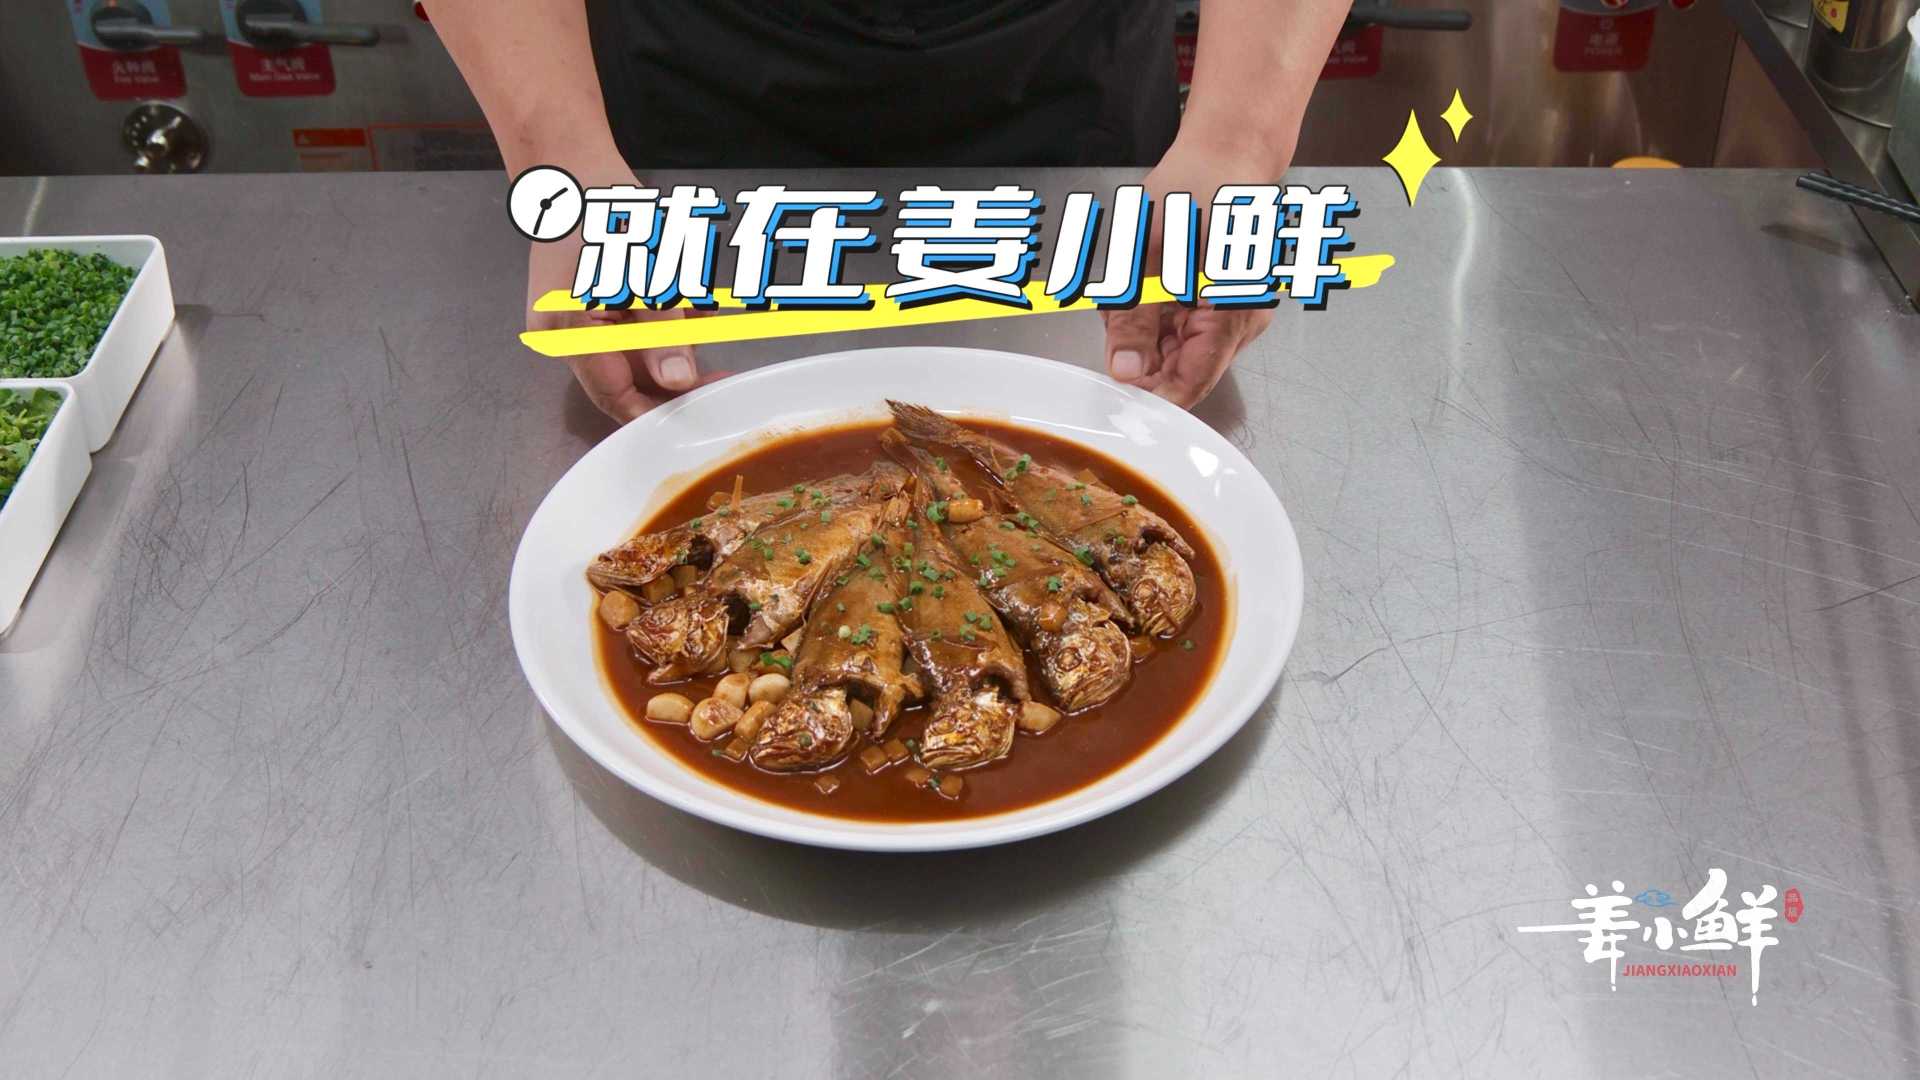 菜品广告｜南京姜小鲜｜野生小黄鱼与烩蛏子汤